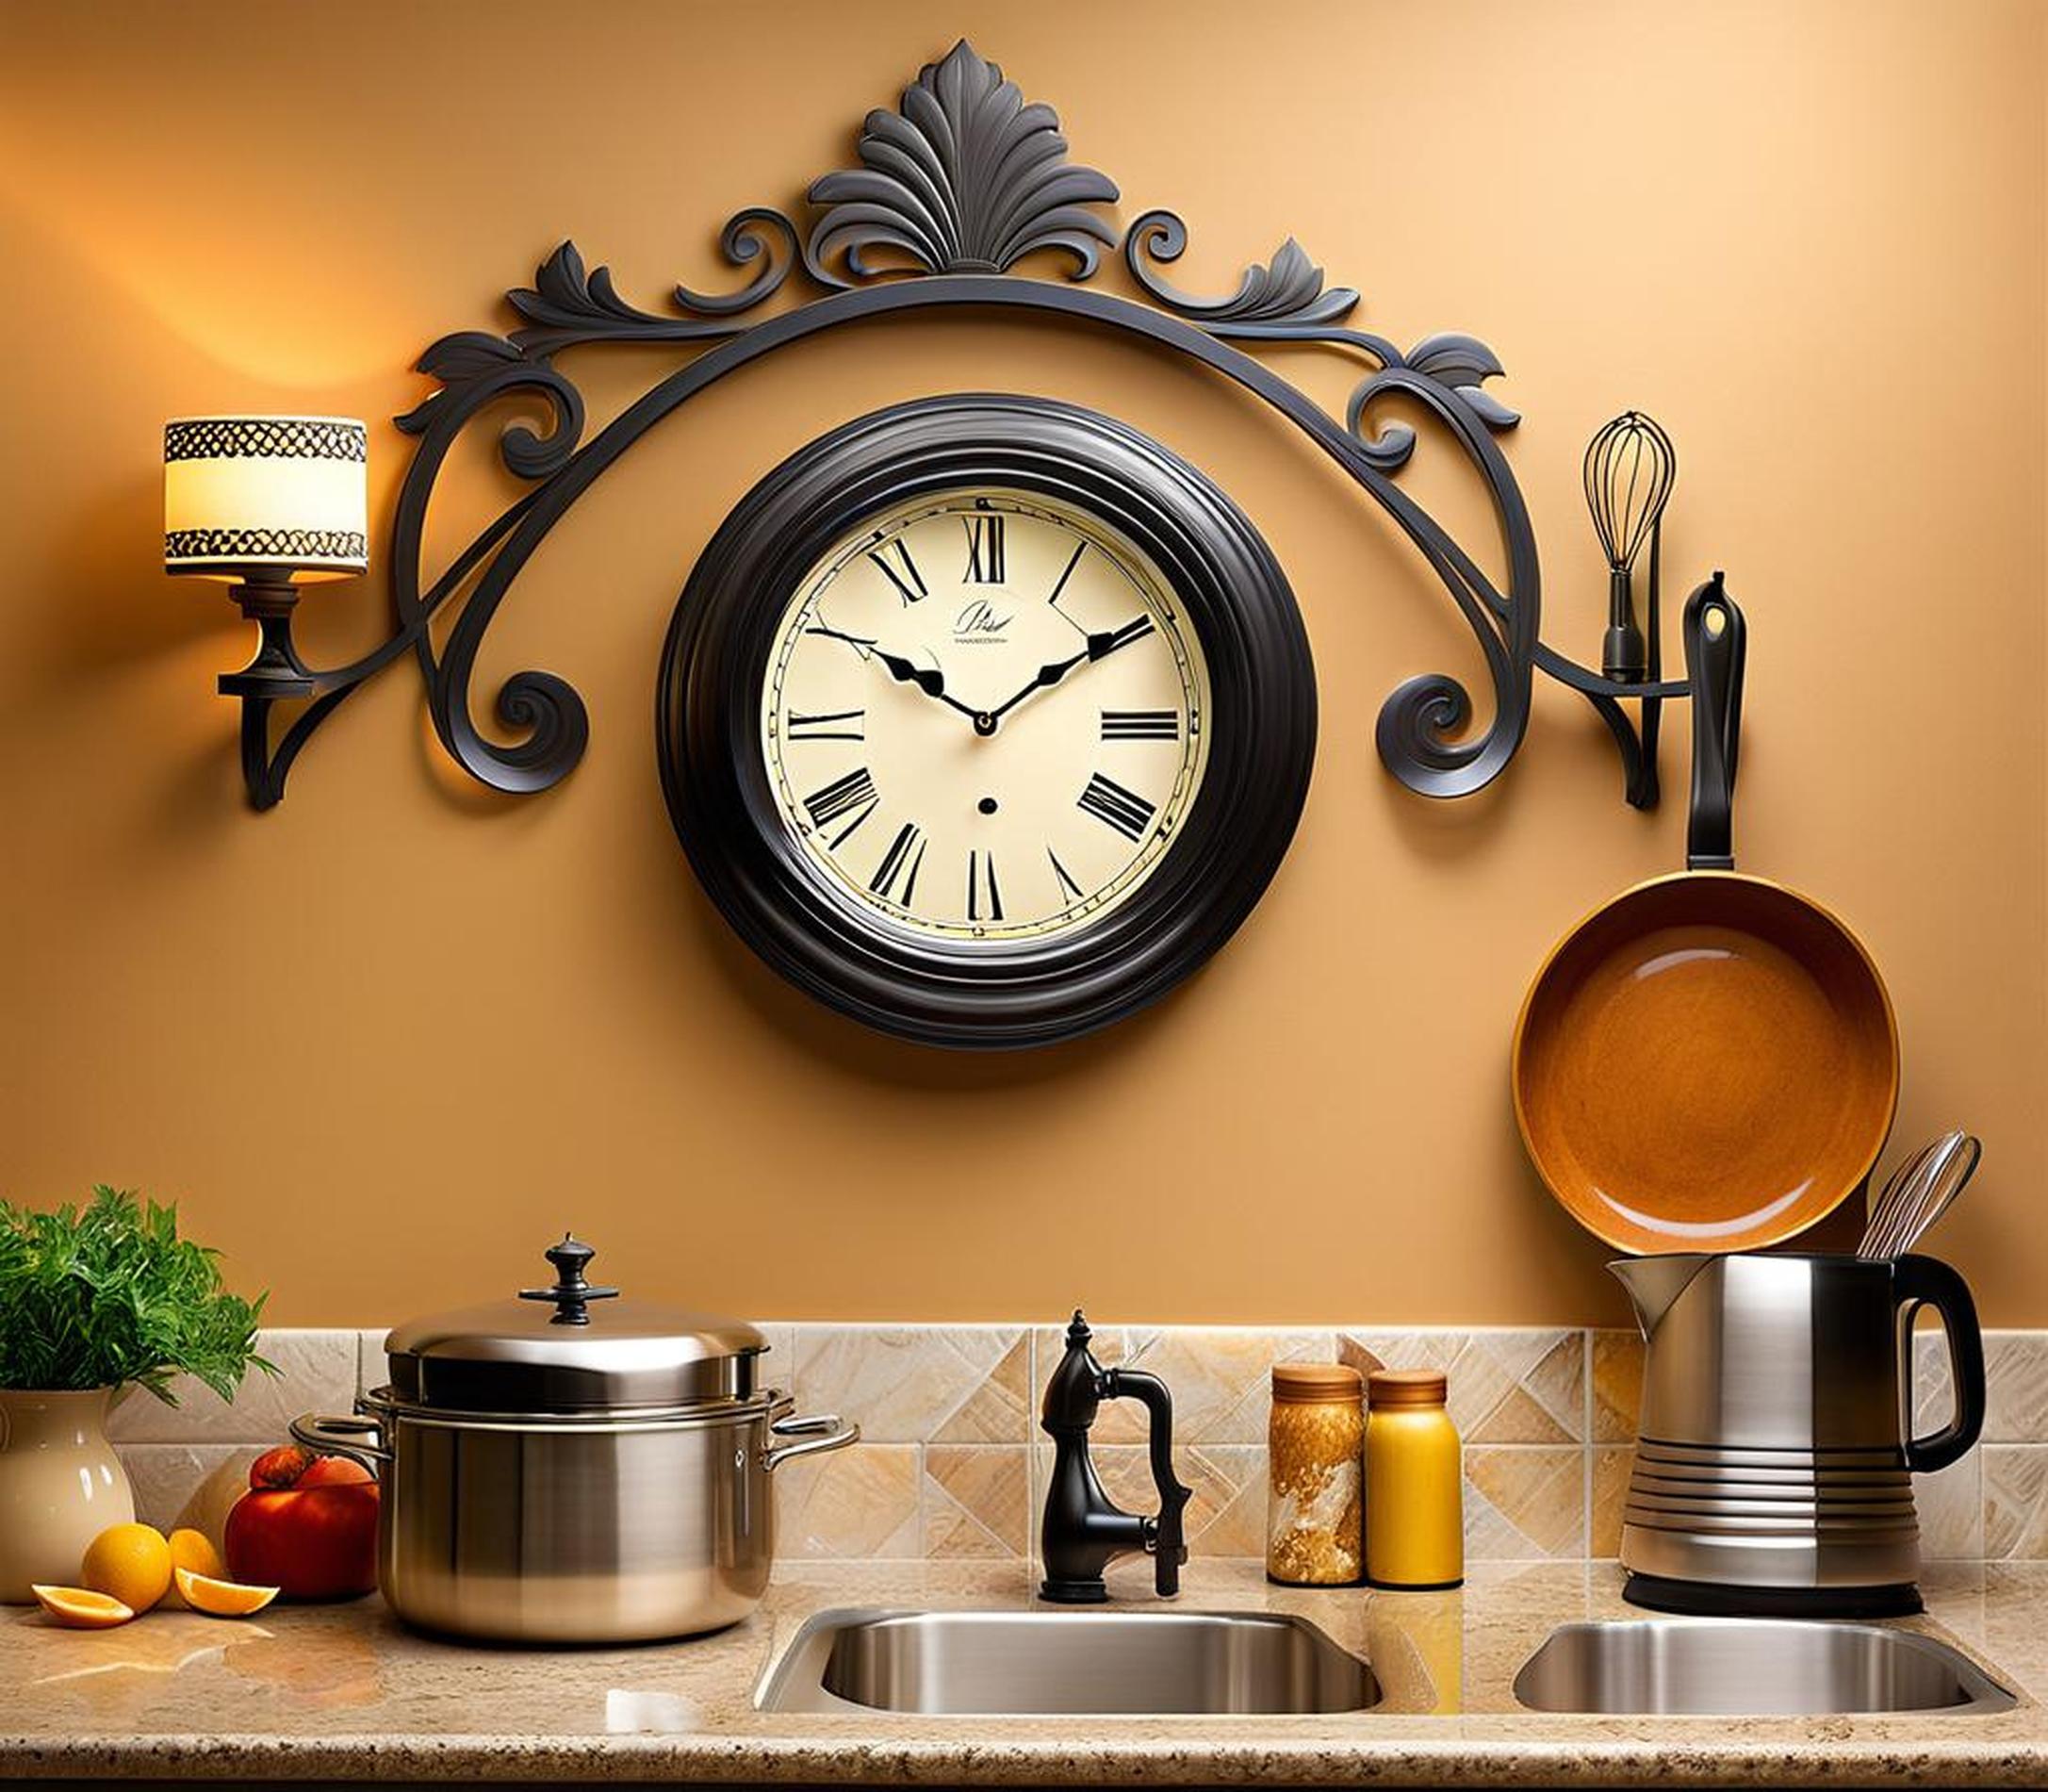 decorative kitchen clocks walls